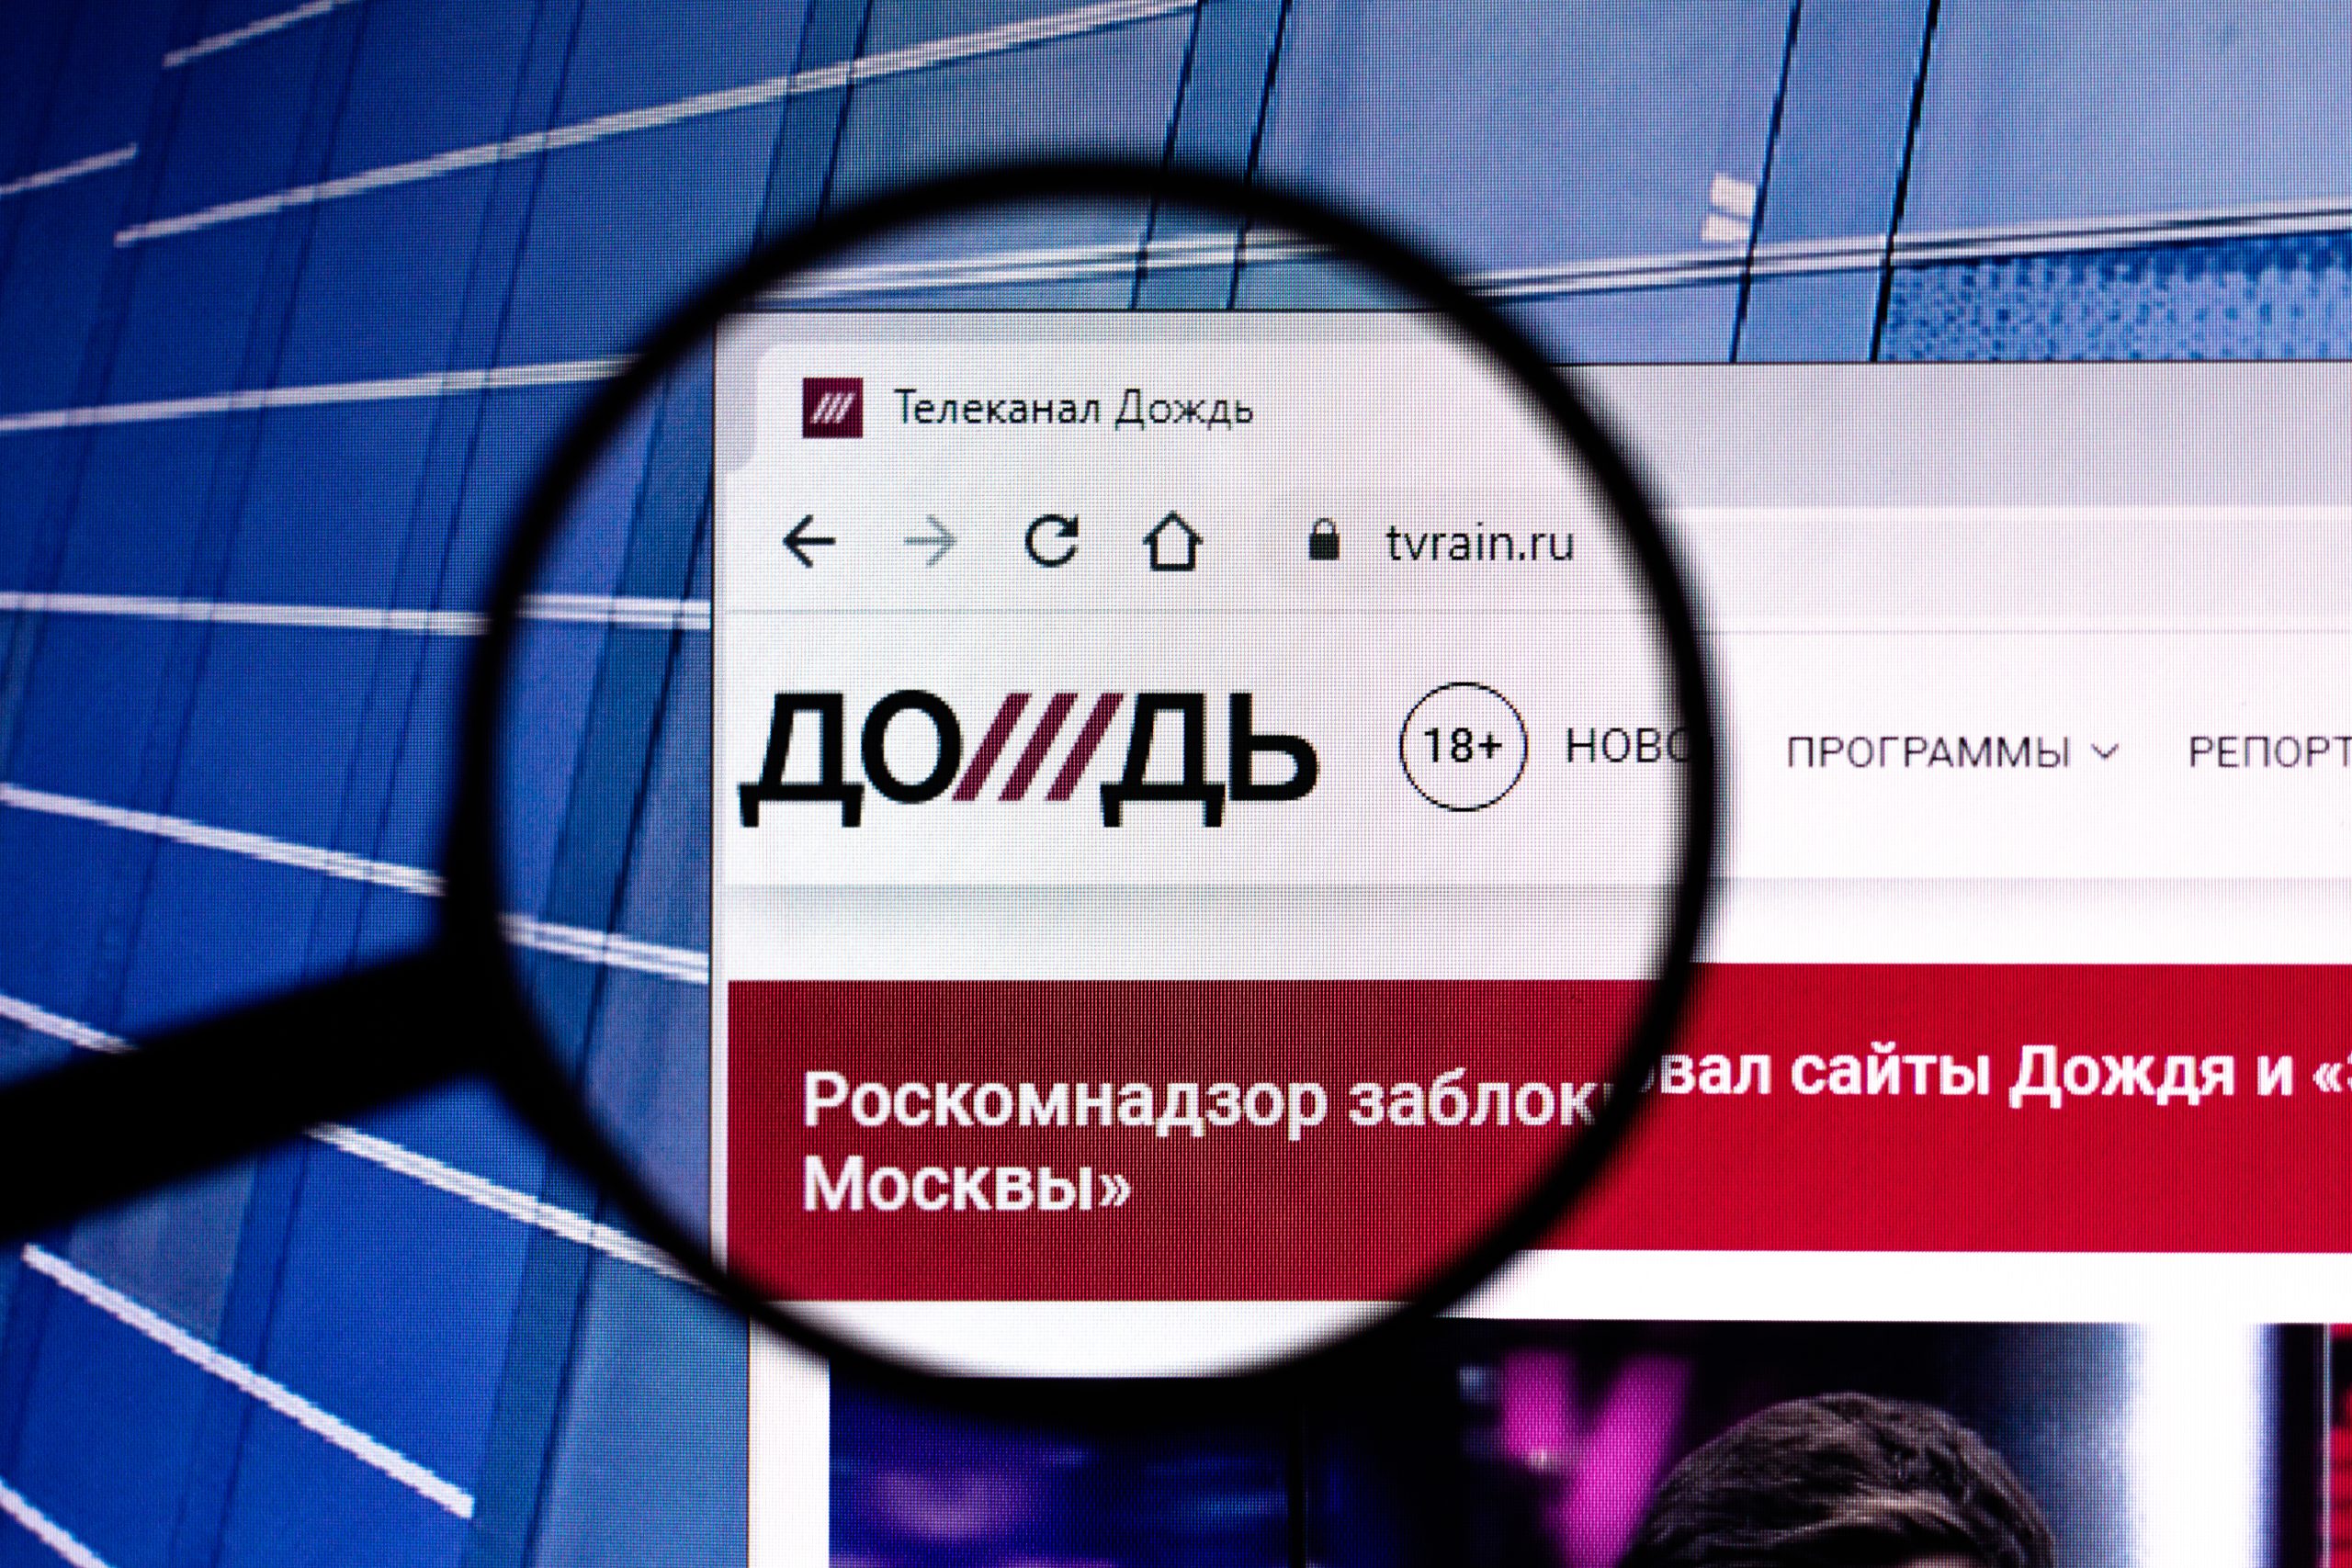 Krievijas kara ziņojums: Prokremliskie telegrammas kanāli reklamē ziņas par TV Rain apraides licences zaudēšanu Latvijā